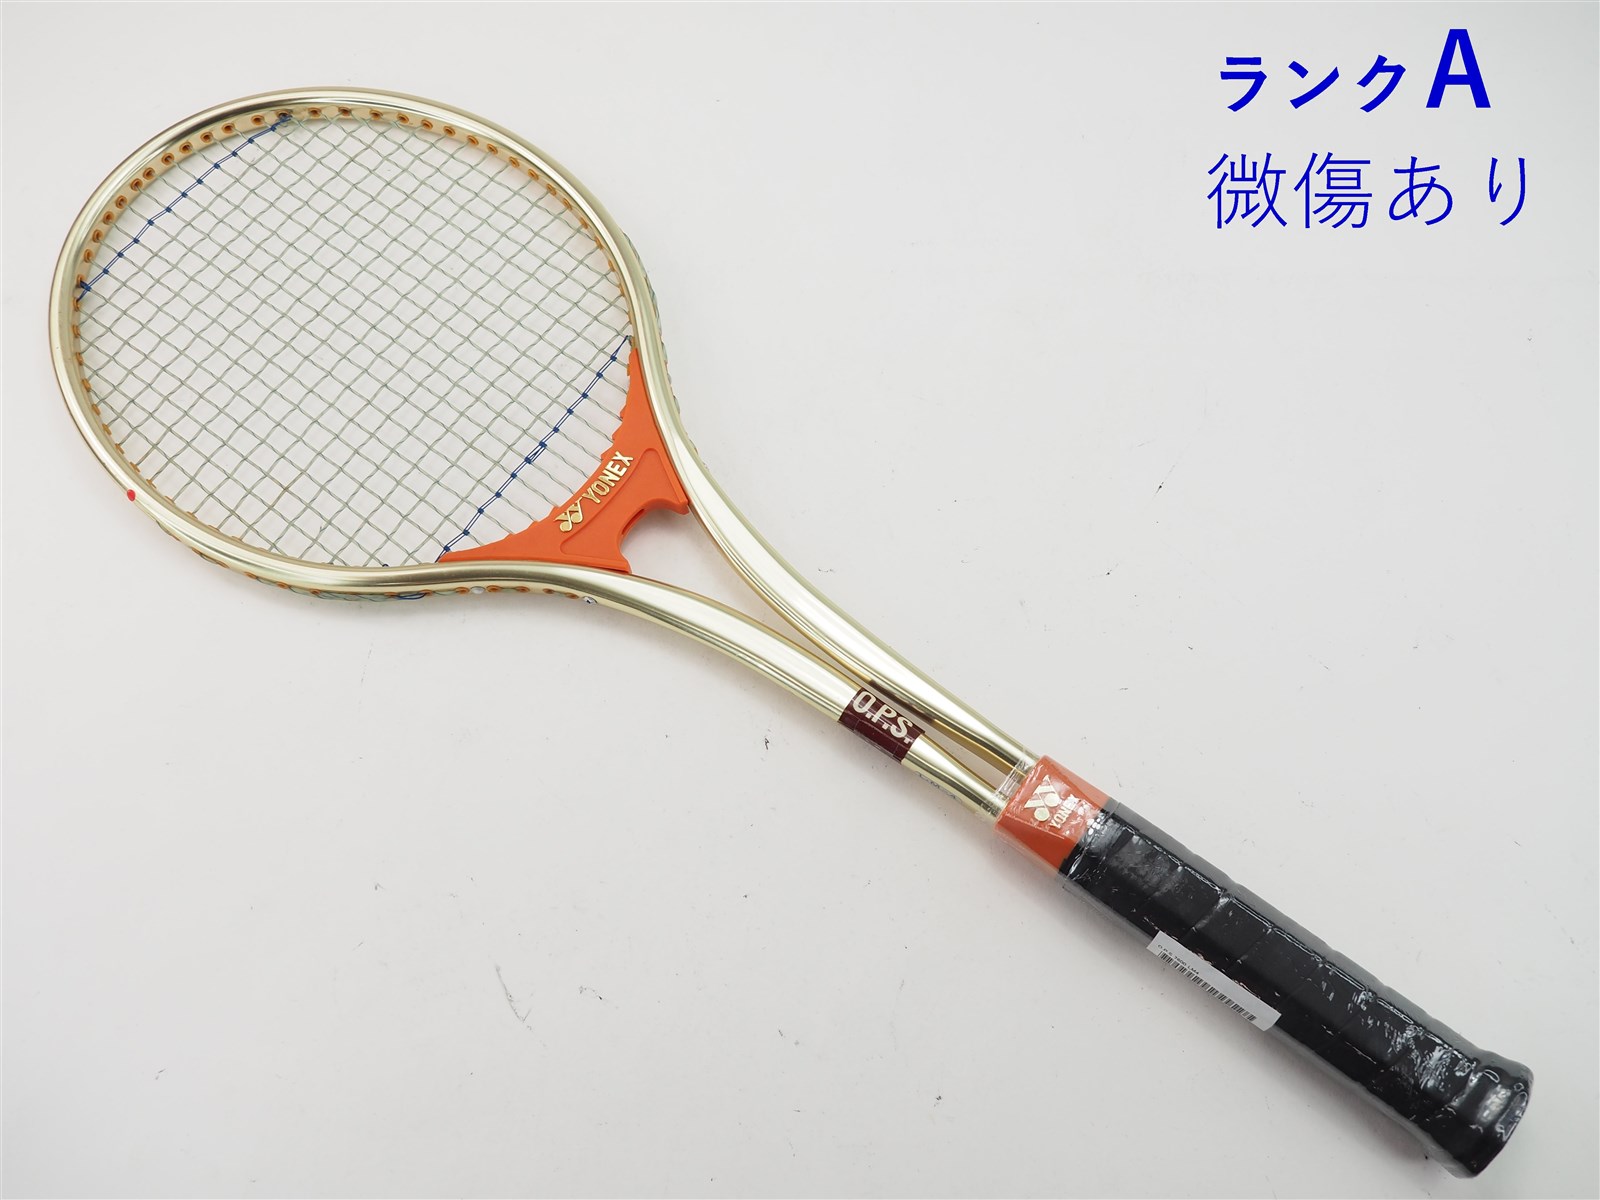 テニスラケット ヨネックス オーバルプレスシャフト 7600 (LM4)YONEX O.P.S 7600